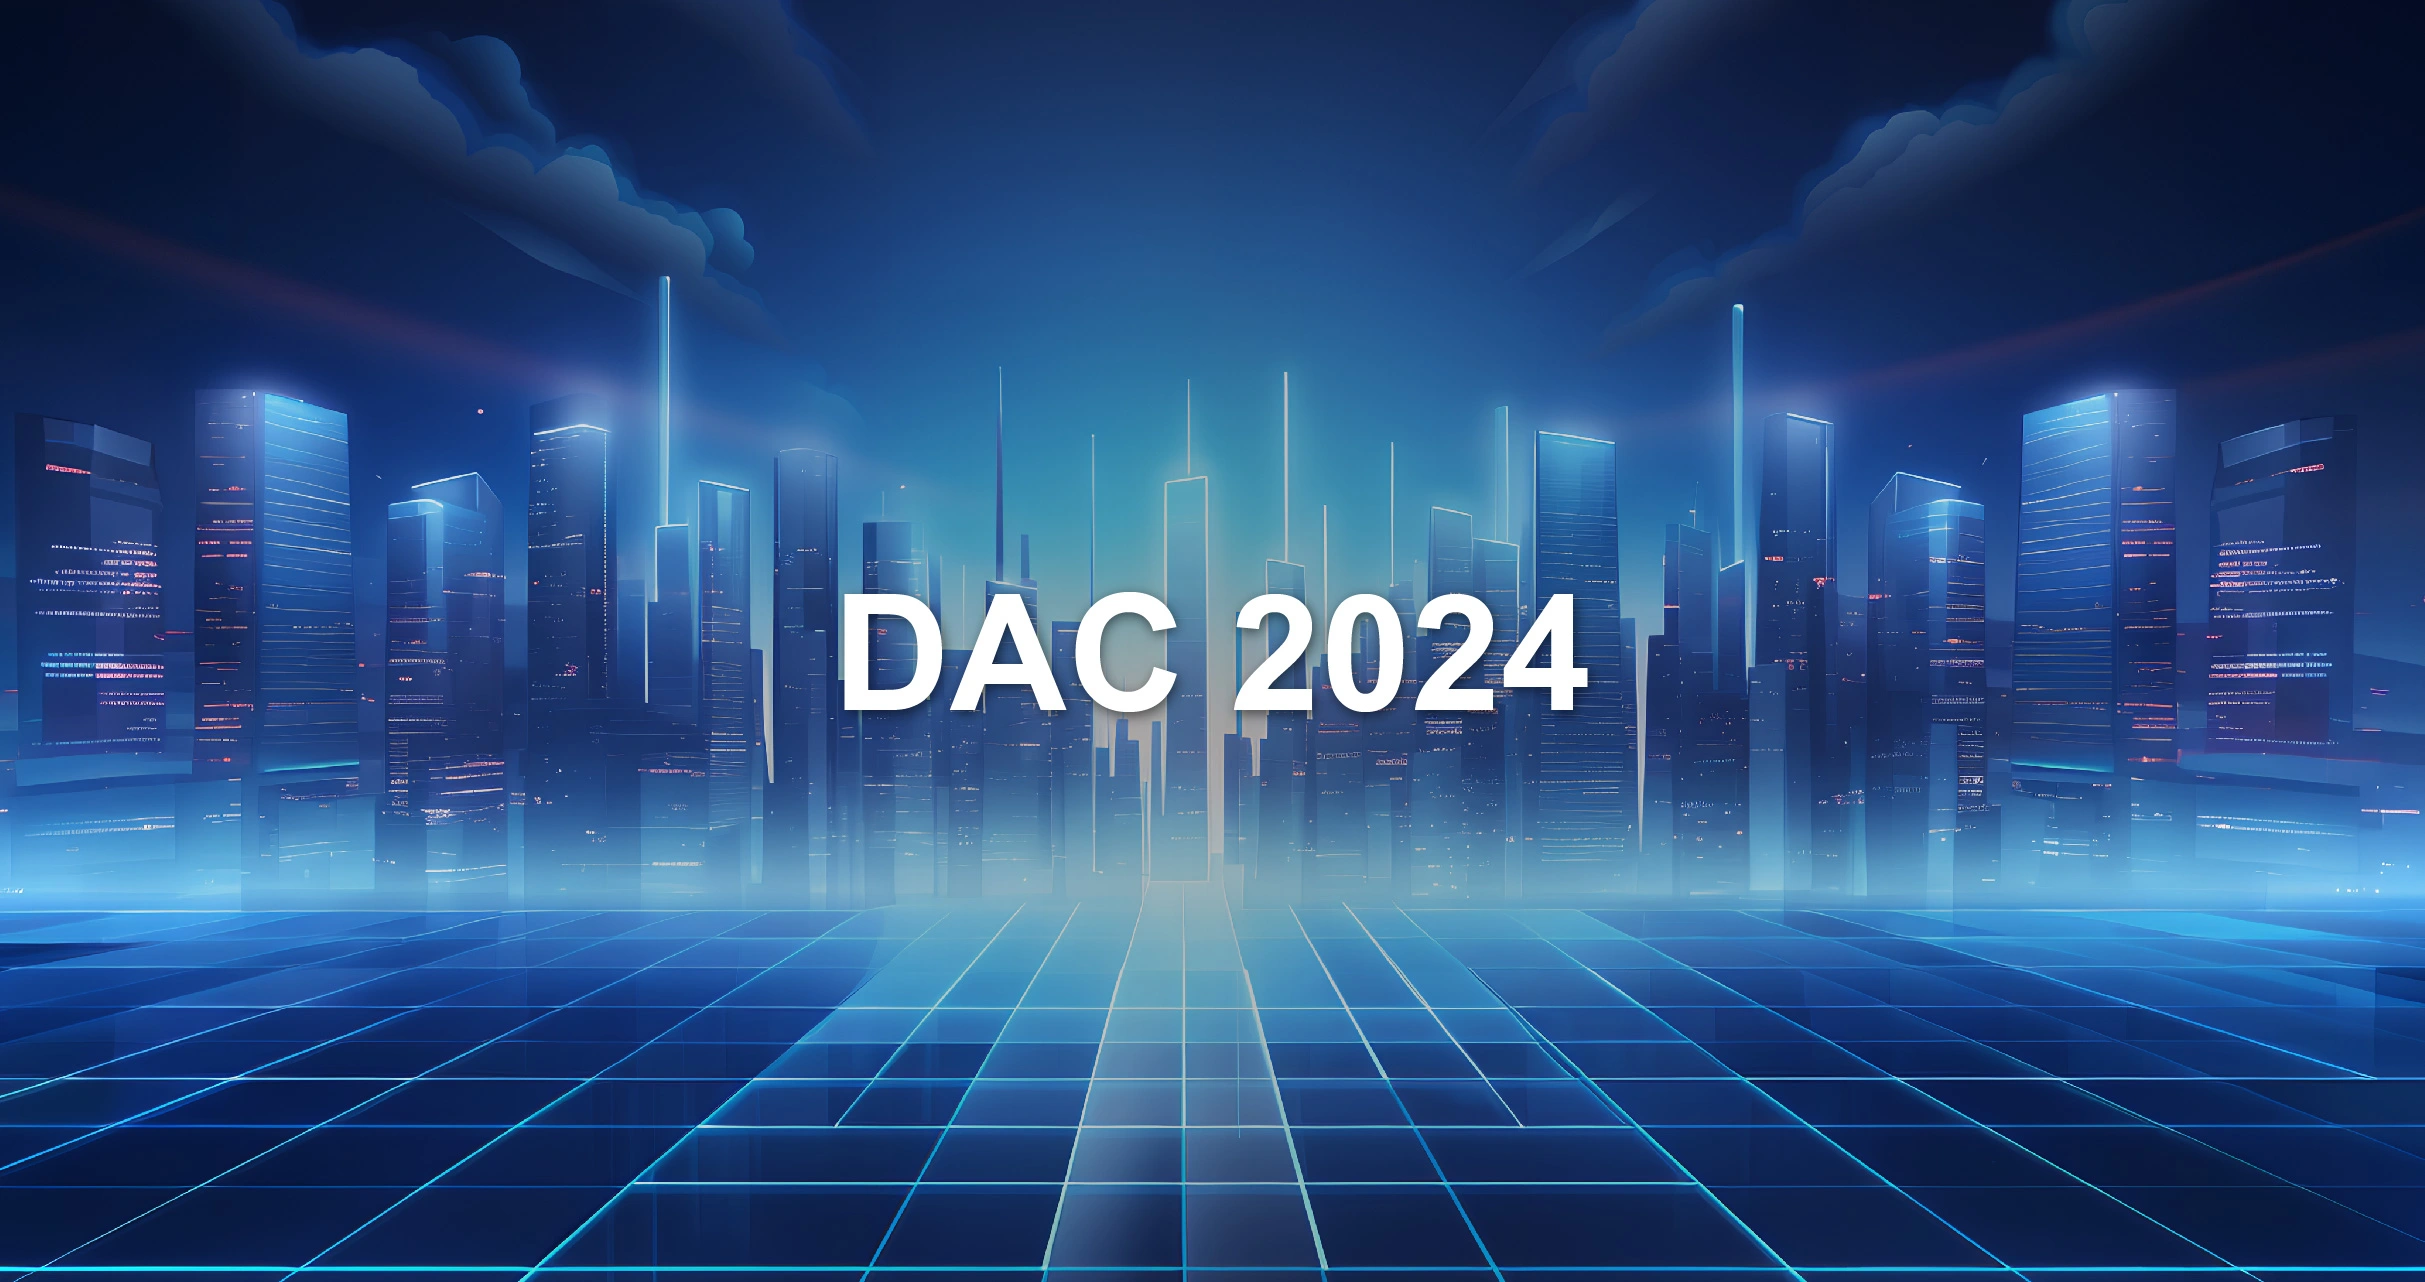 DAC 2024